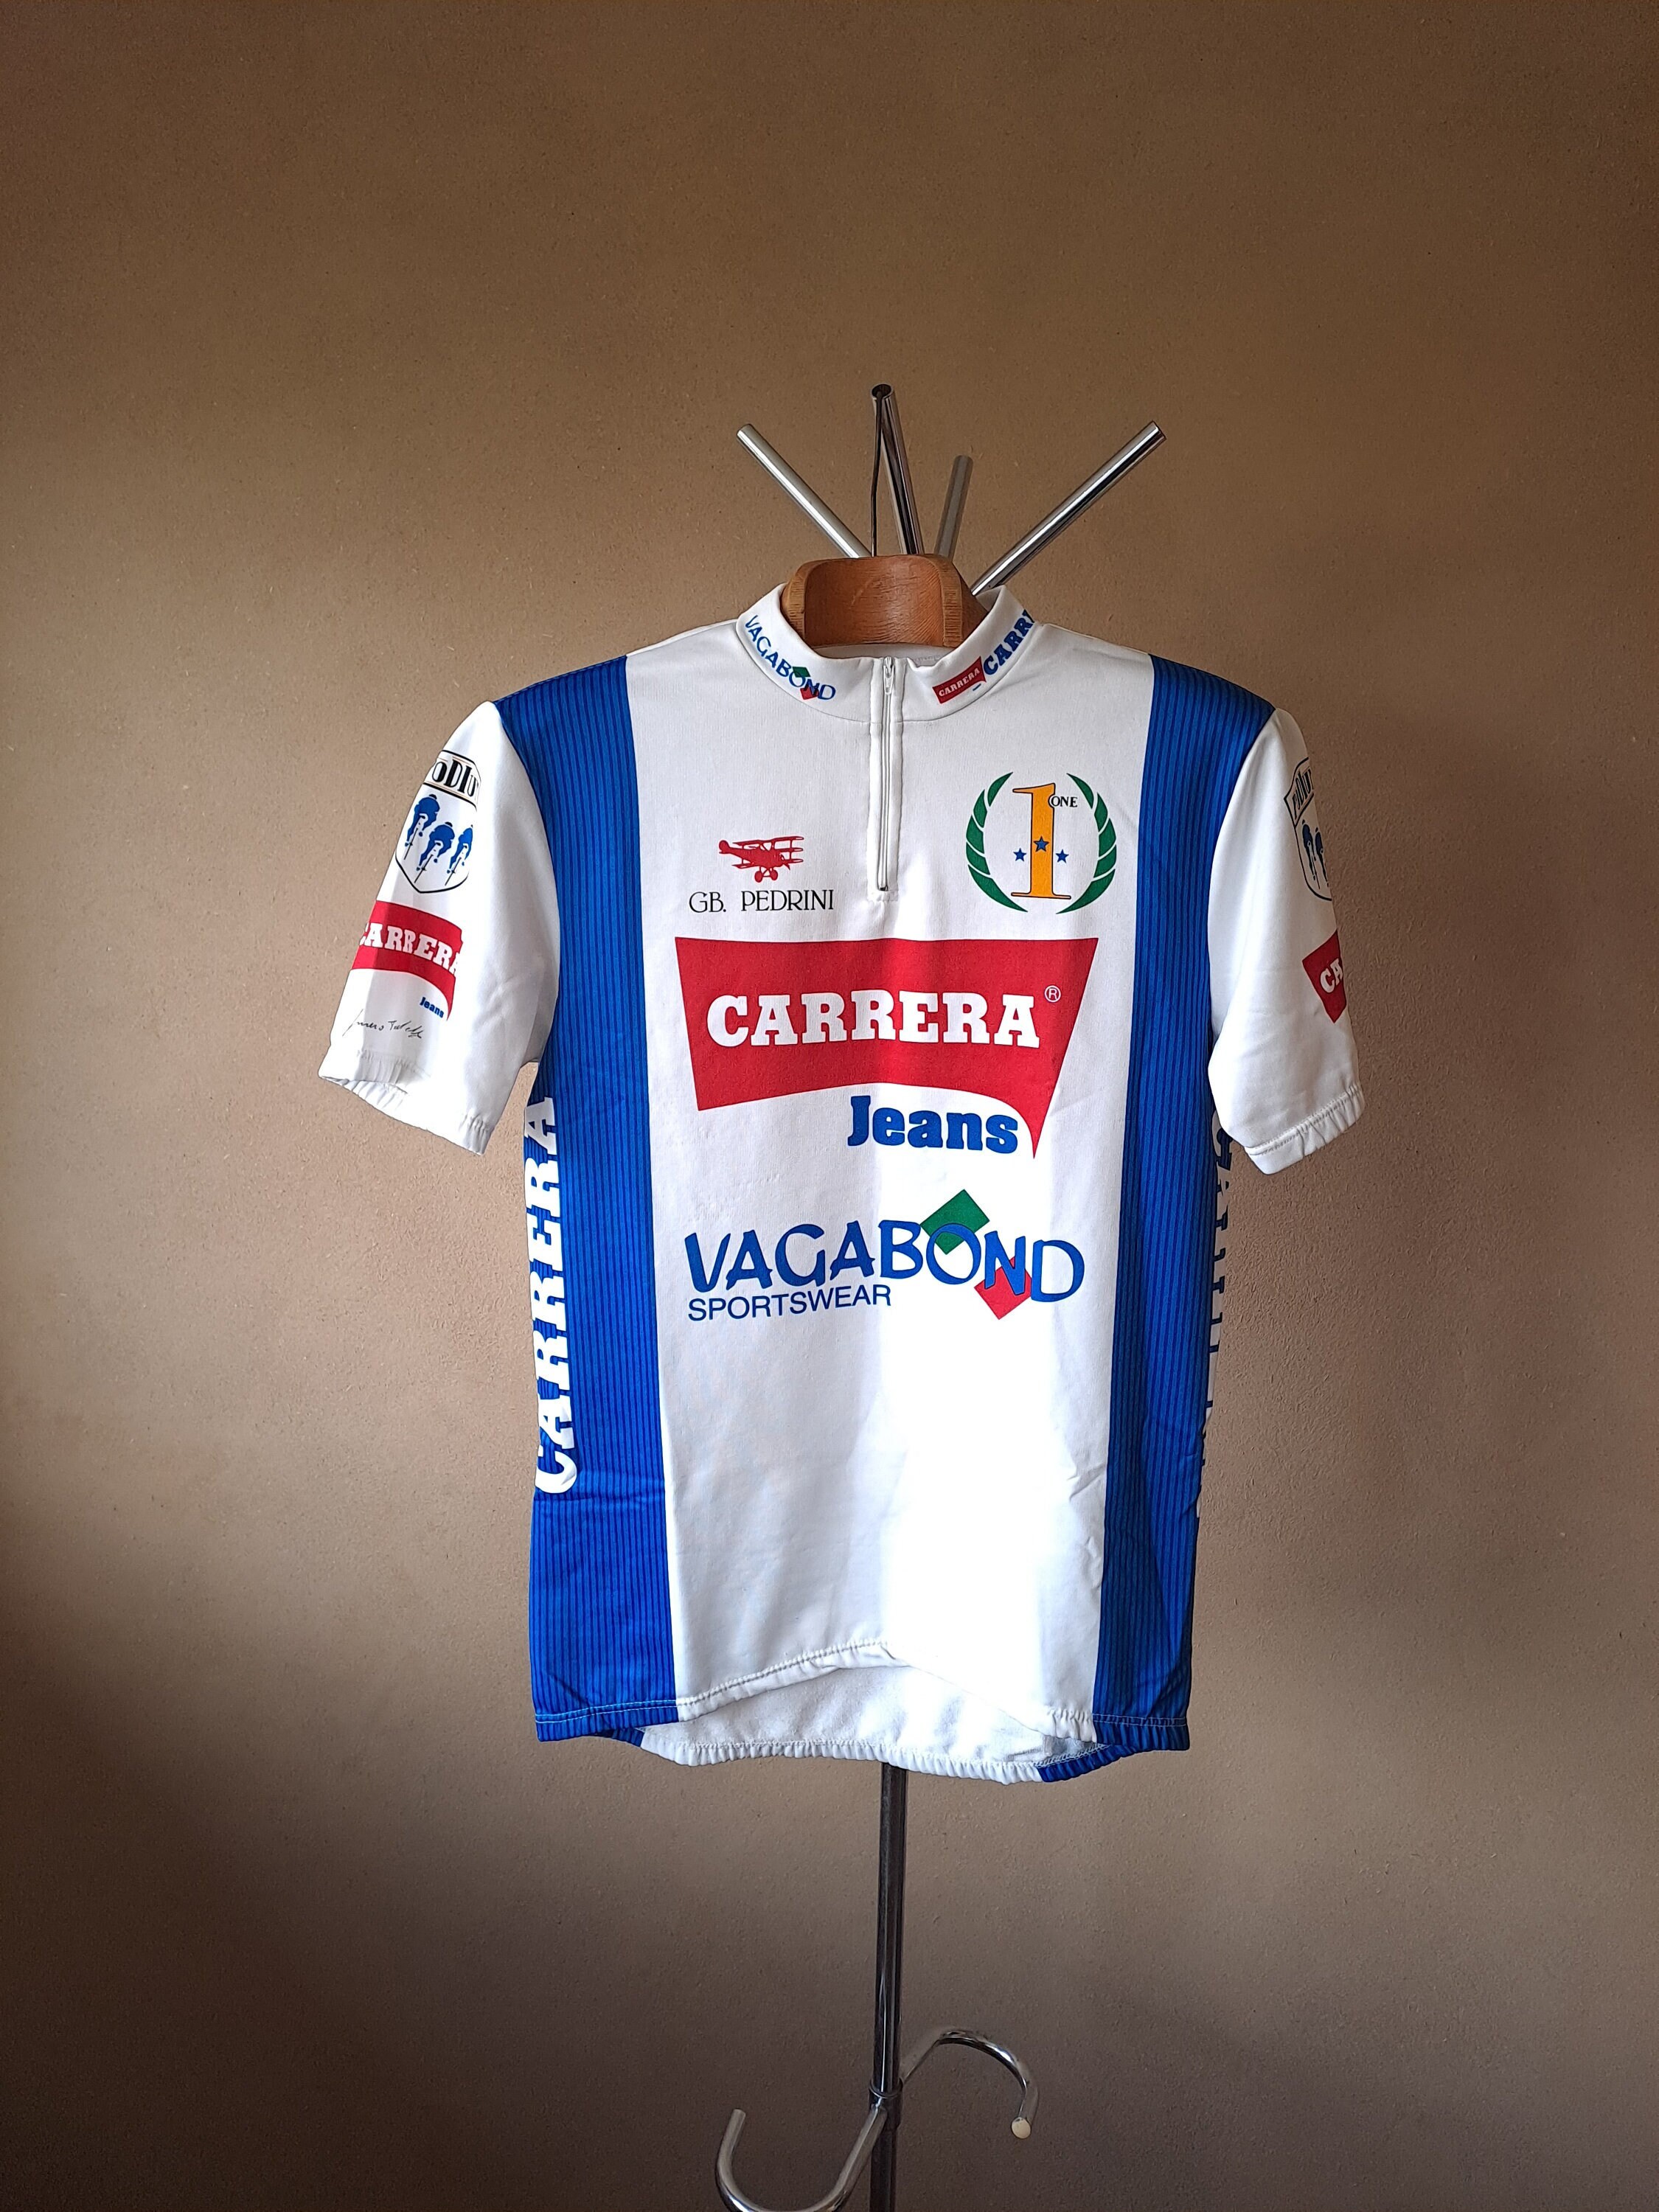 1990 Carrera Vagabond Italian Short Pro Cycling Jersey - Etsy